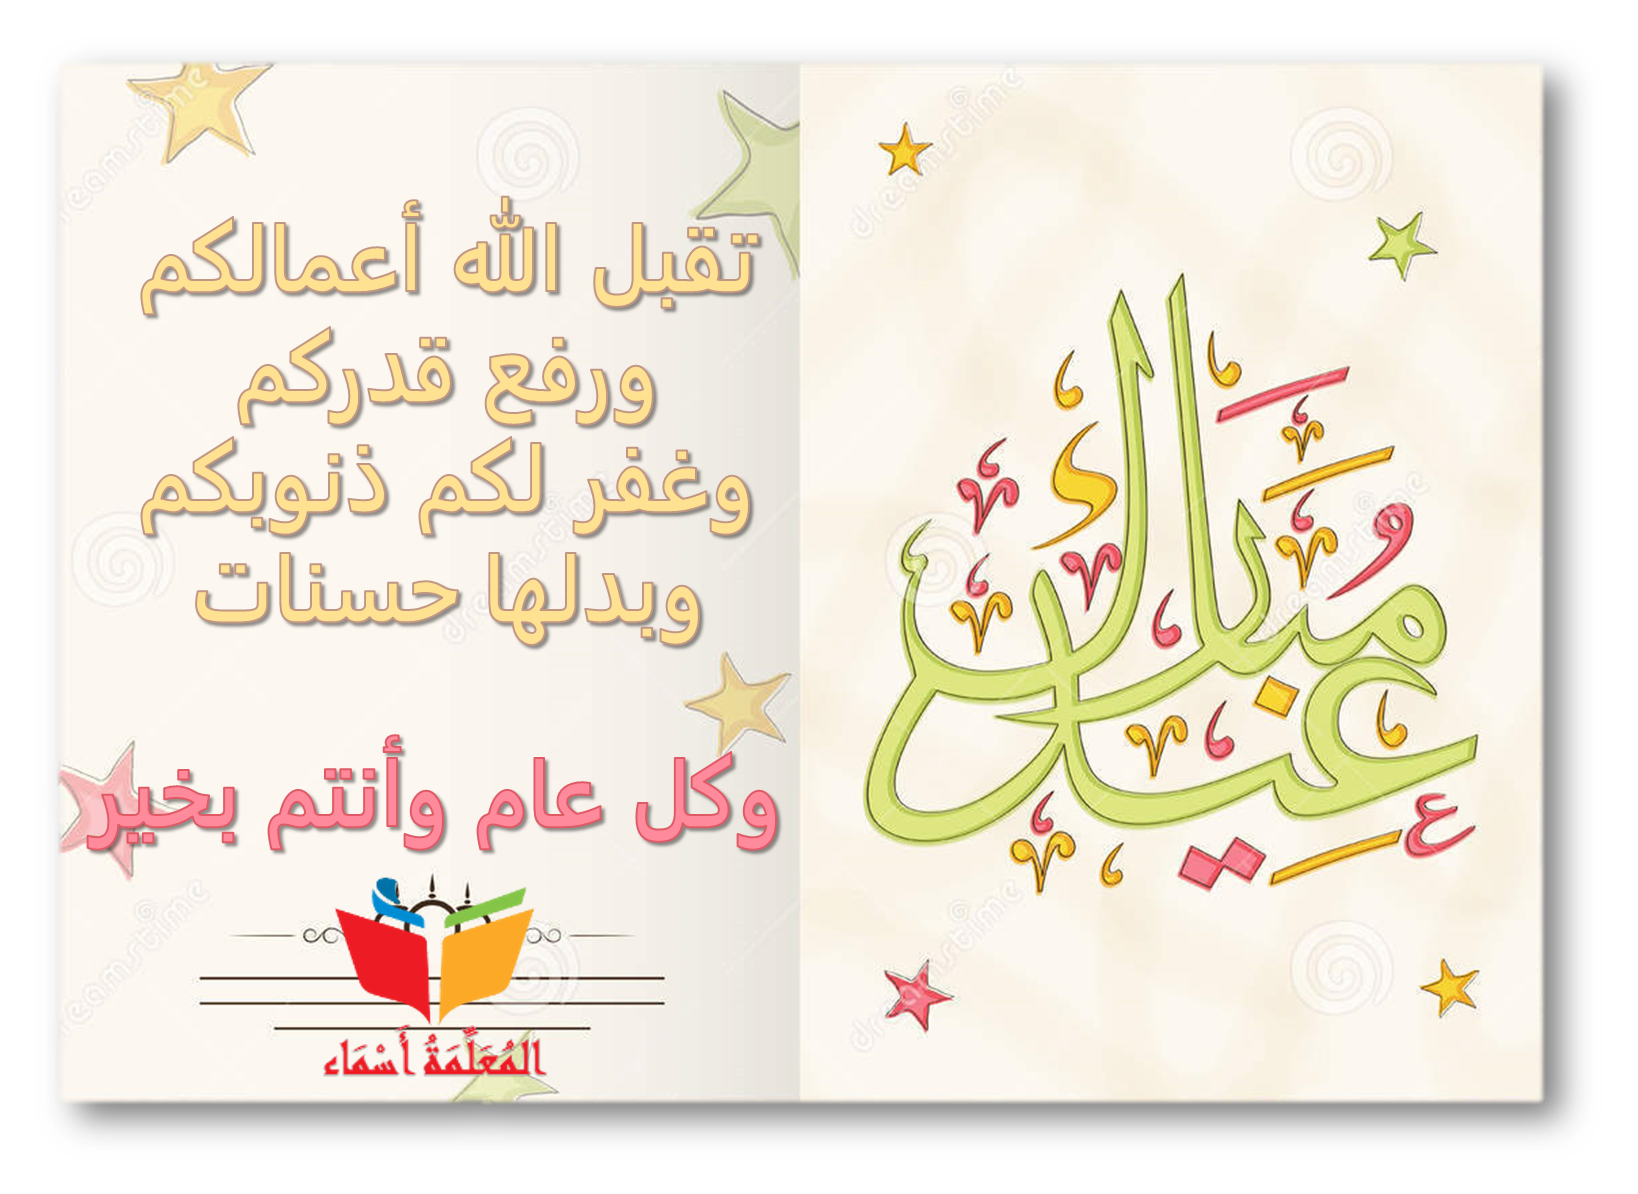 تهنئة عيد الفطر المبارك المعلمة أسماء